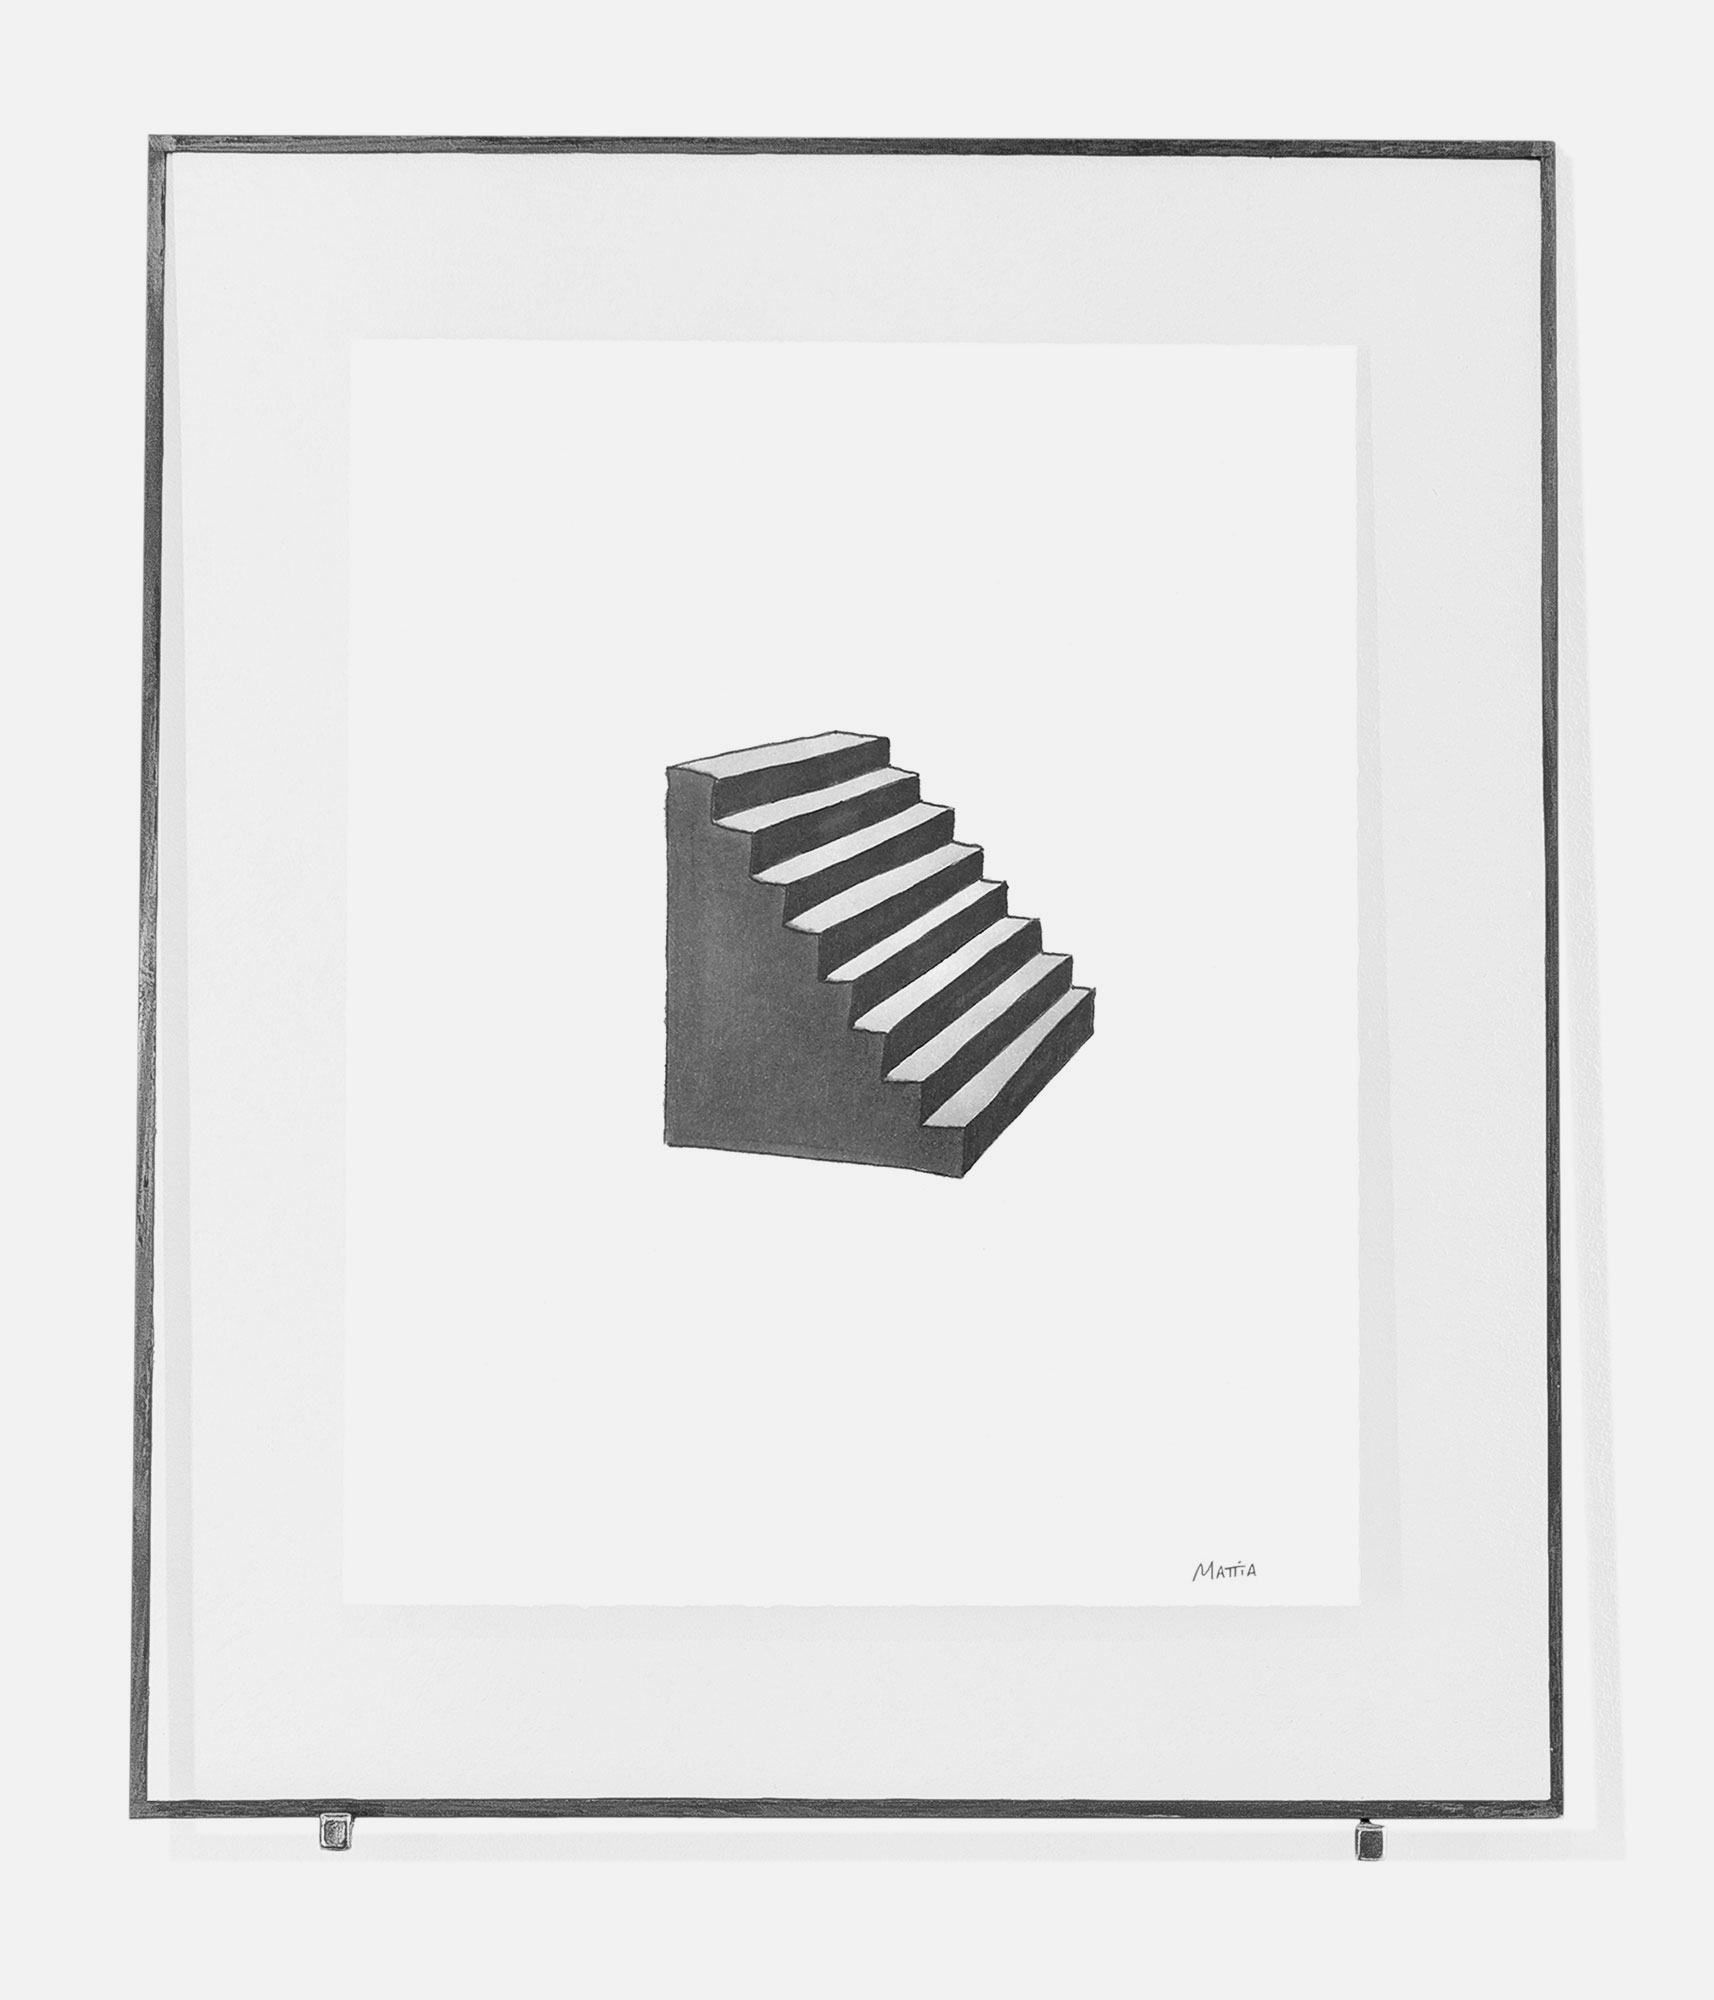 mattia listowski art décoration architecture design dessin réversible encre feutre à alcool bic noir et blanc objet 0002 escalier série oeuvre édition limitée signée paris bruxelles 2021